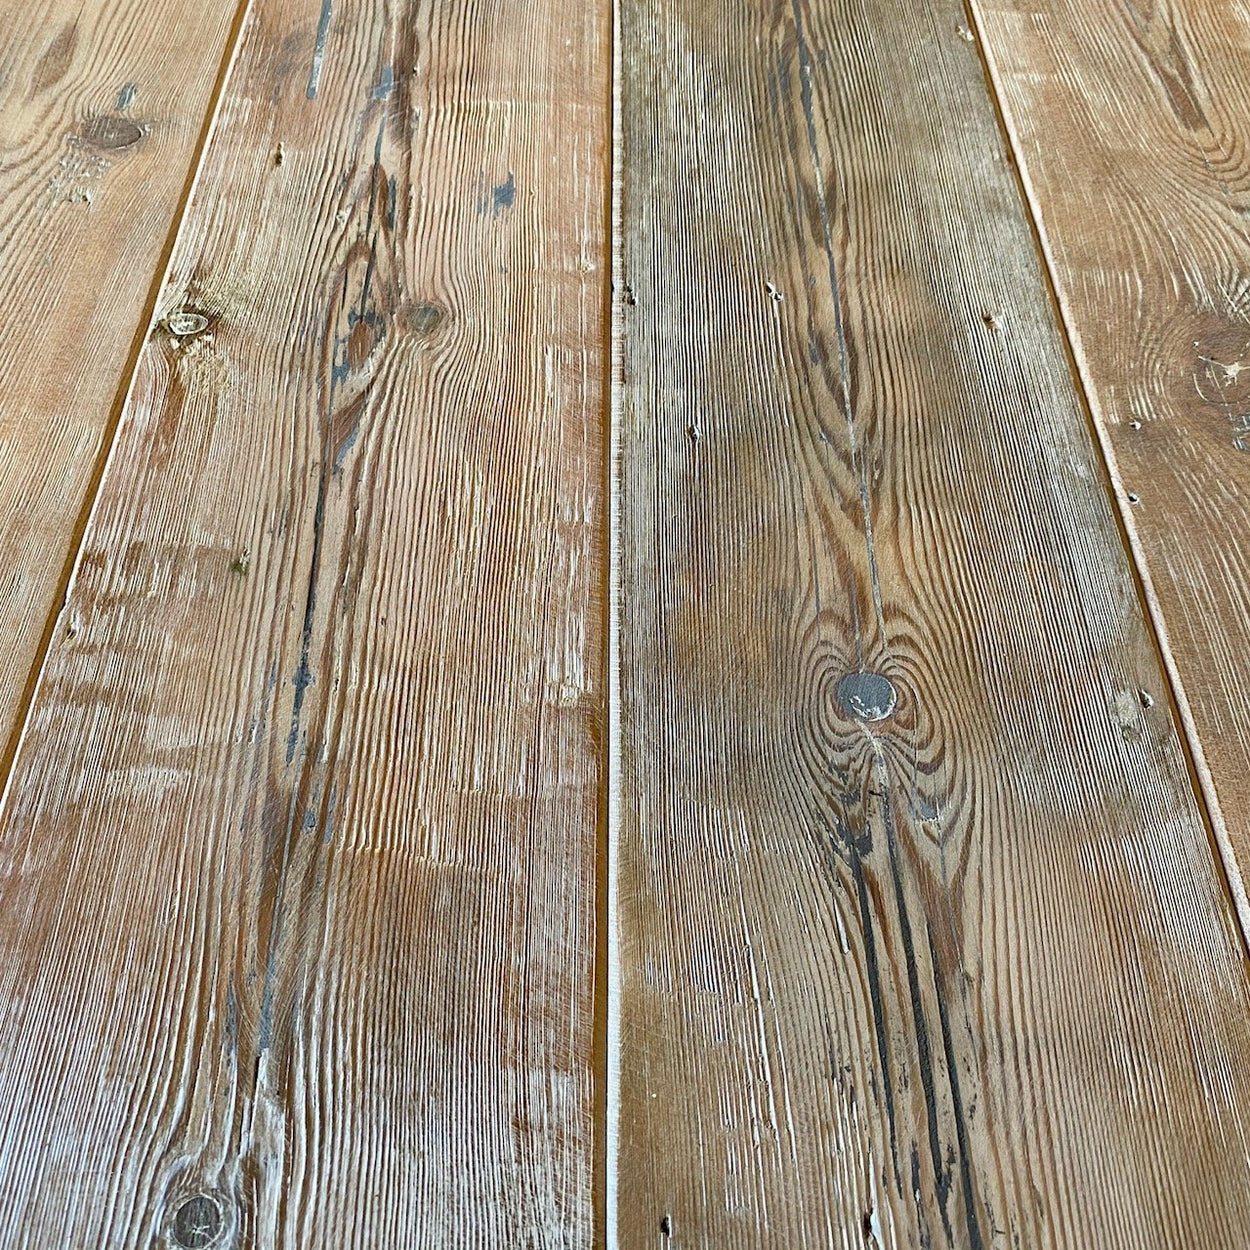 Sample of Reclaimed Wharf Pine Floorboards